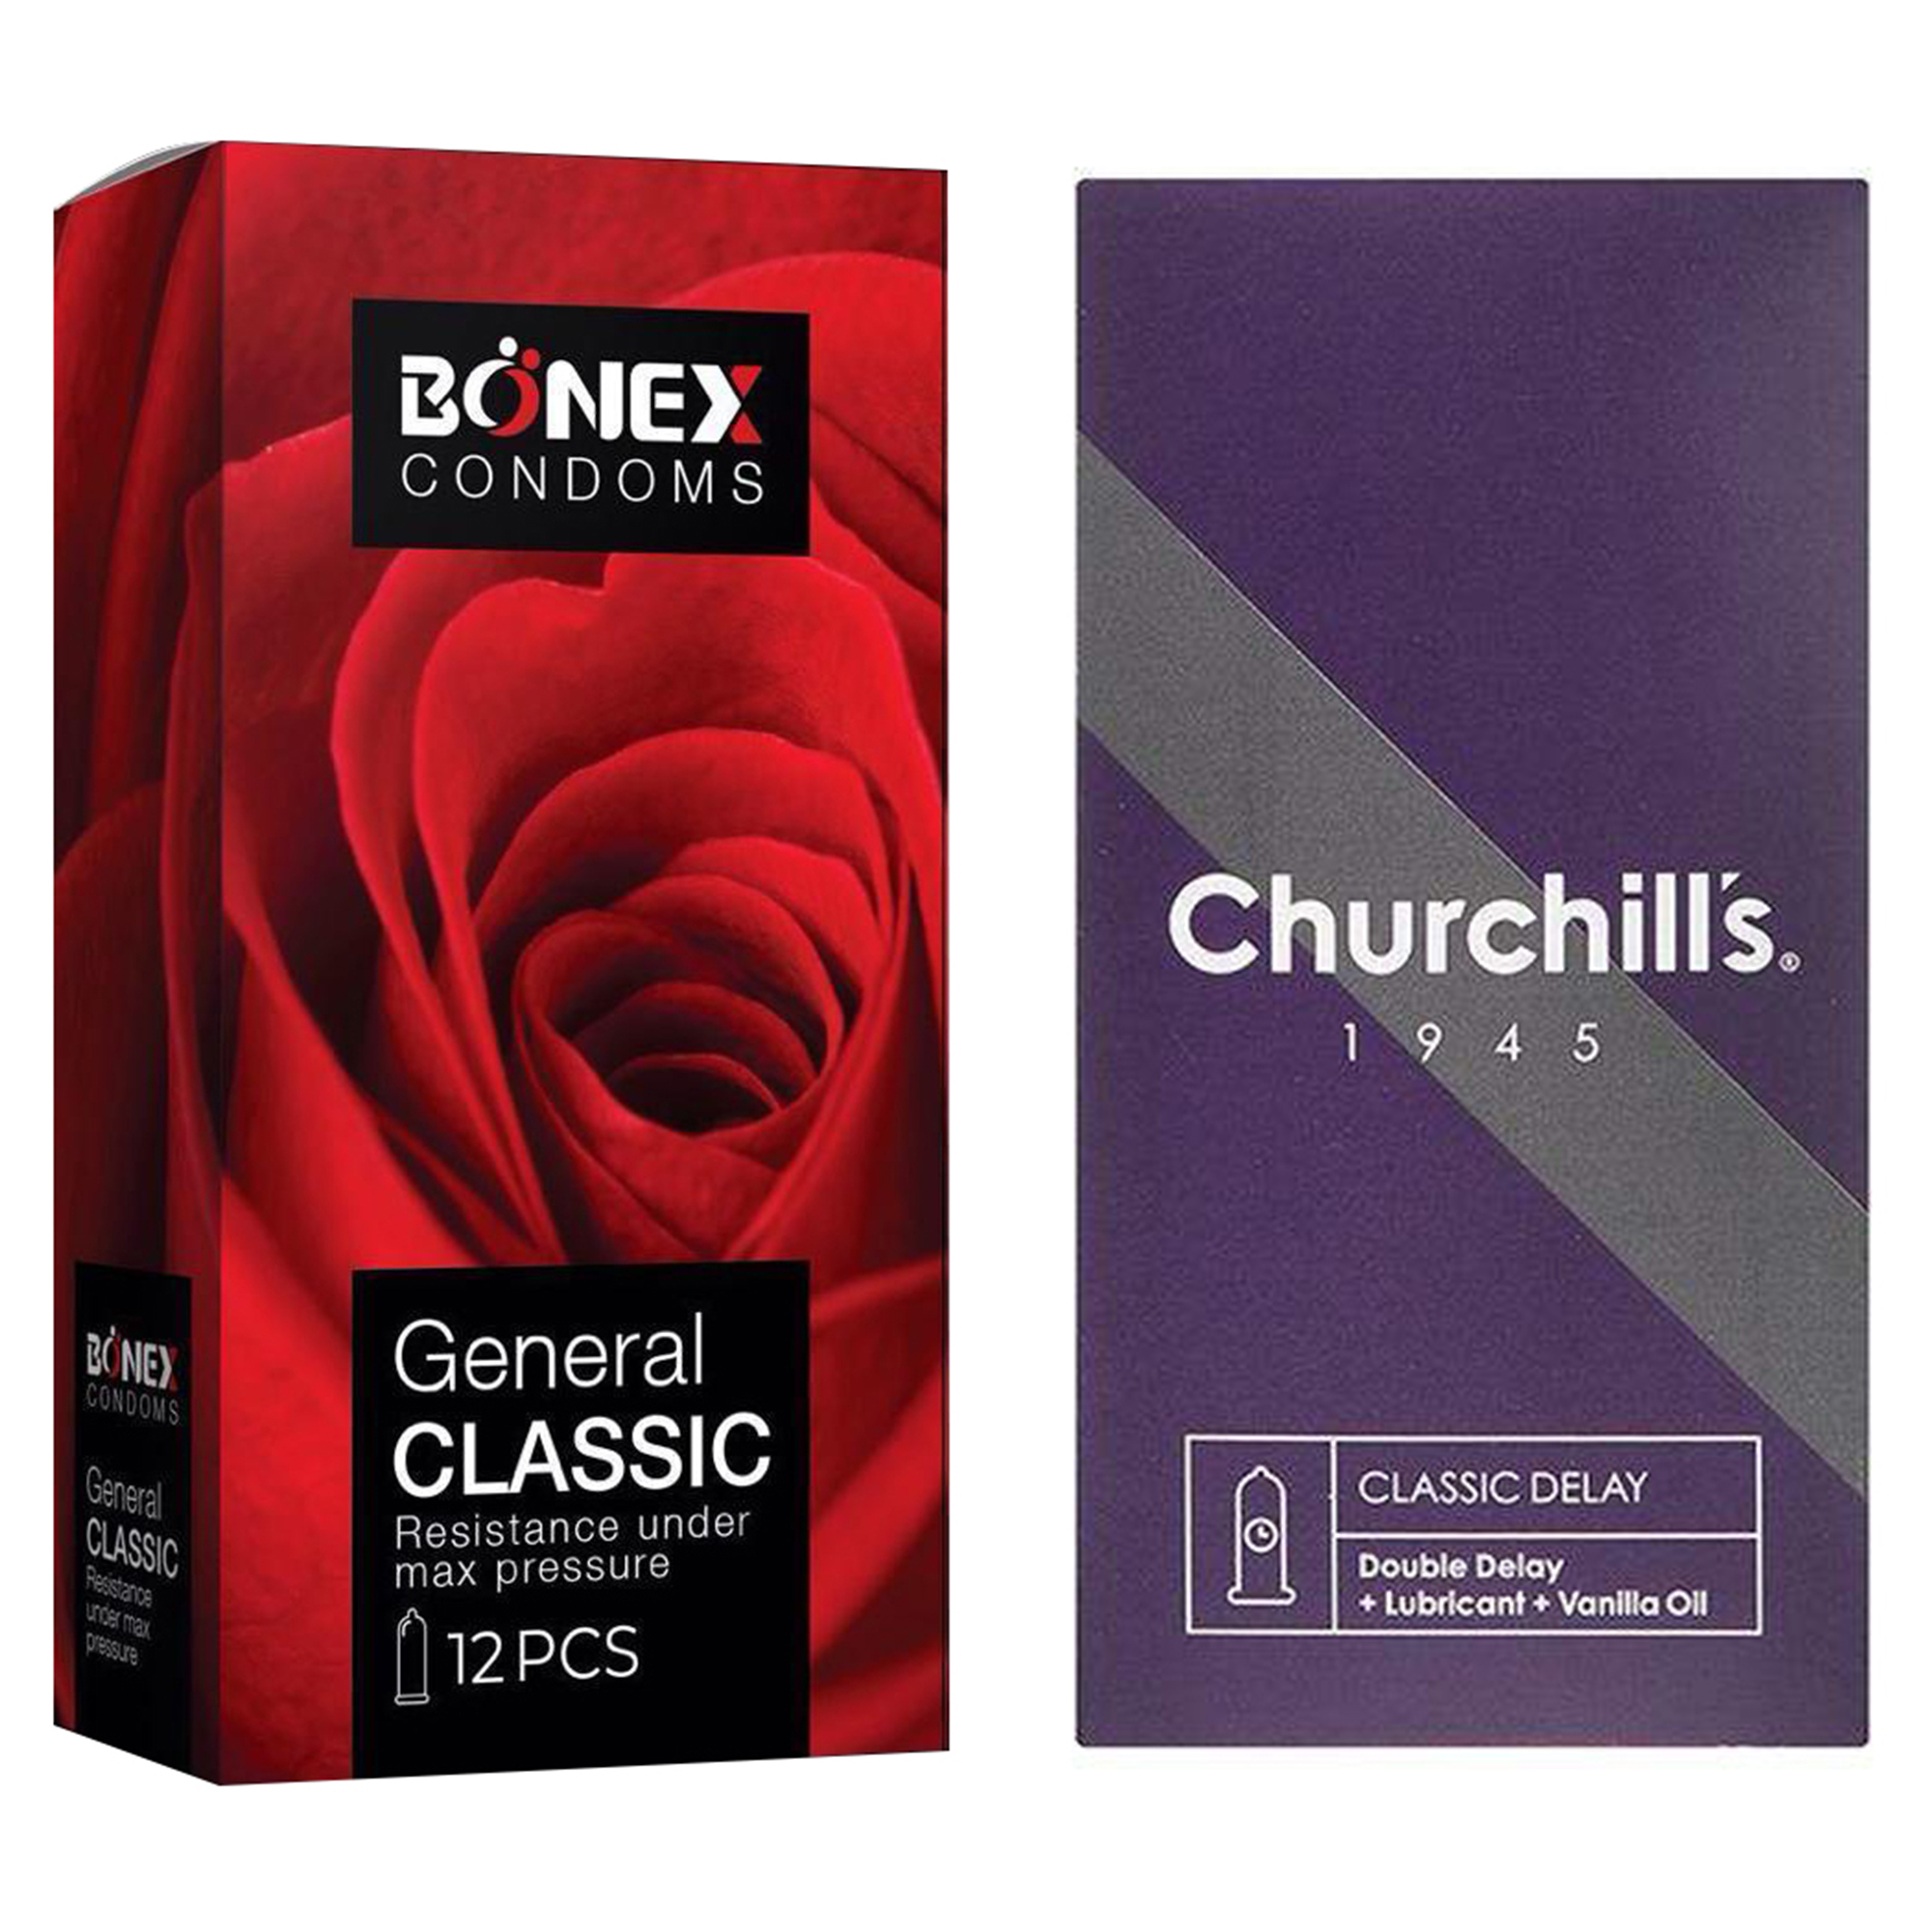 کاندوم چرچیلز مدل Classic Delay بسته 12 عددی به همراه کاندوم بونکس مدل General Classic بسته 12 عددی 